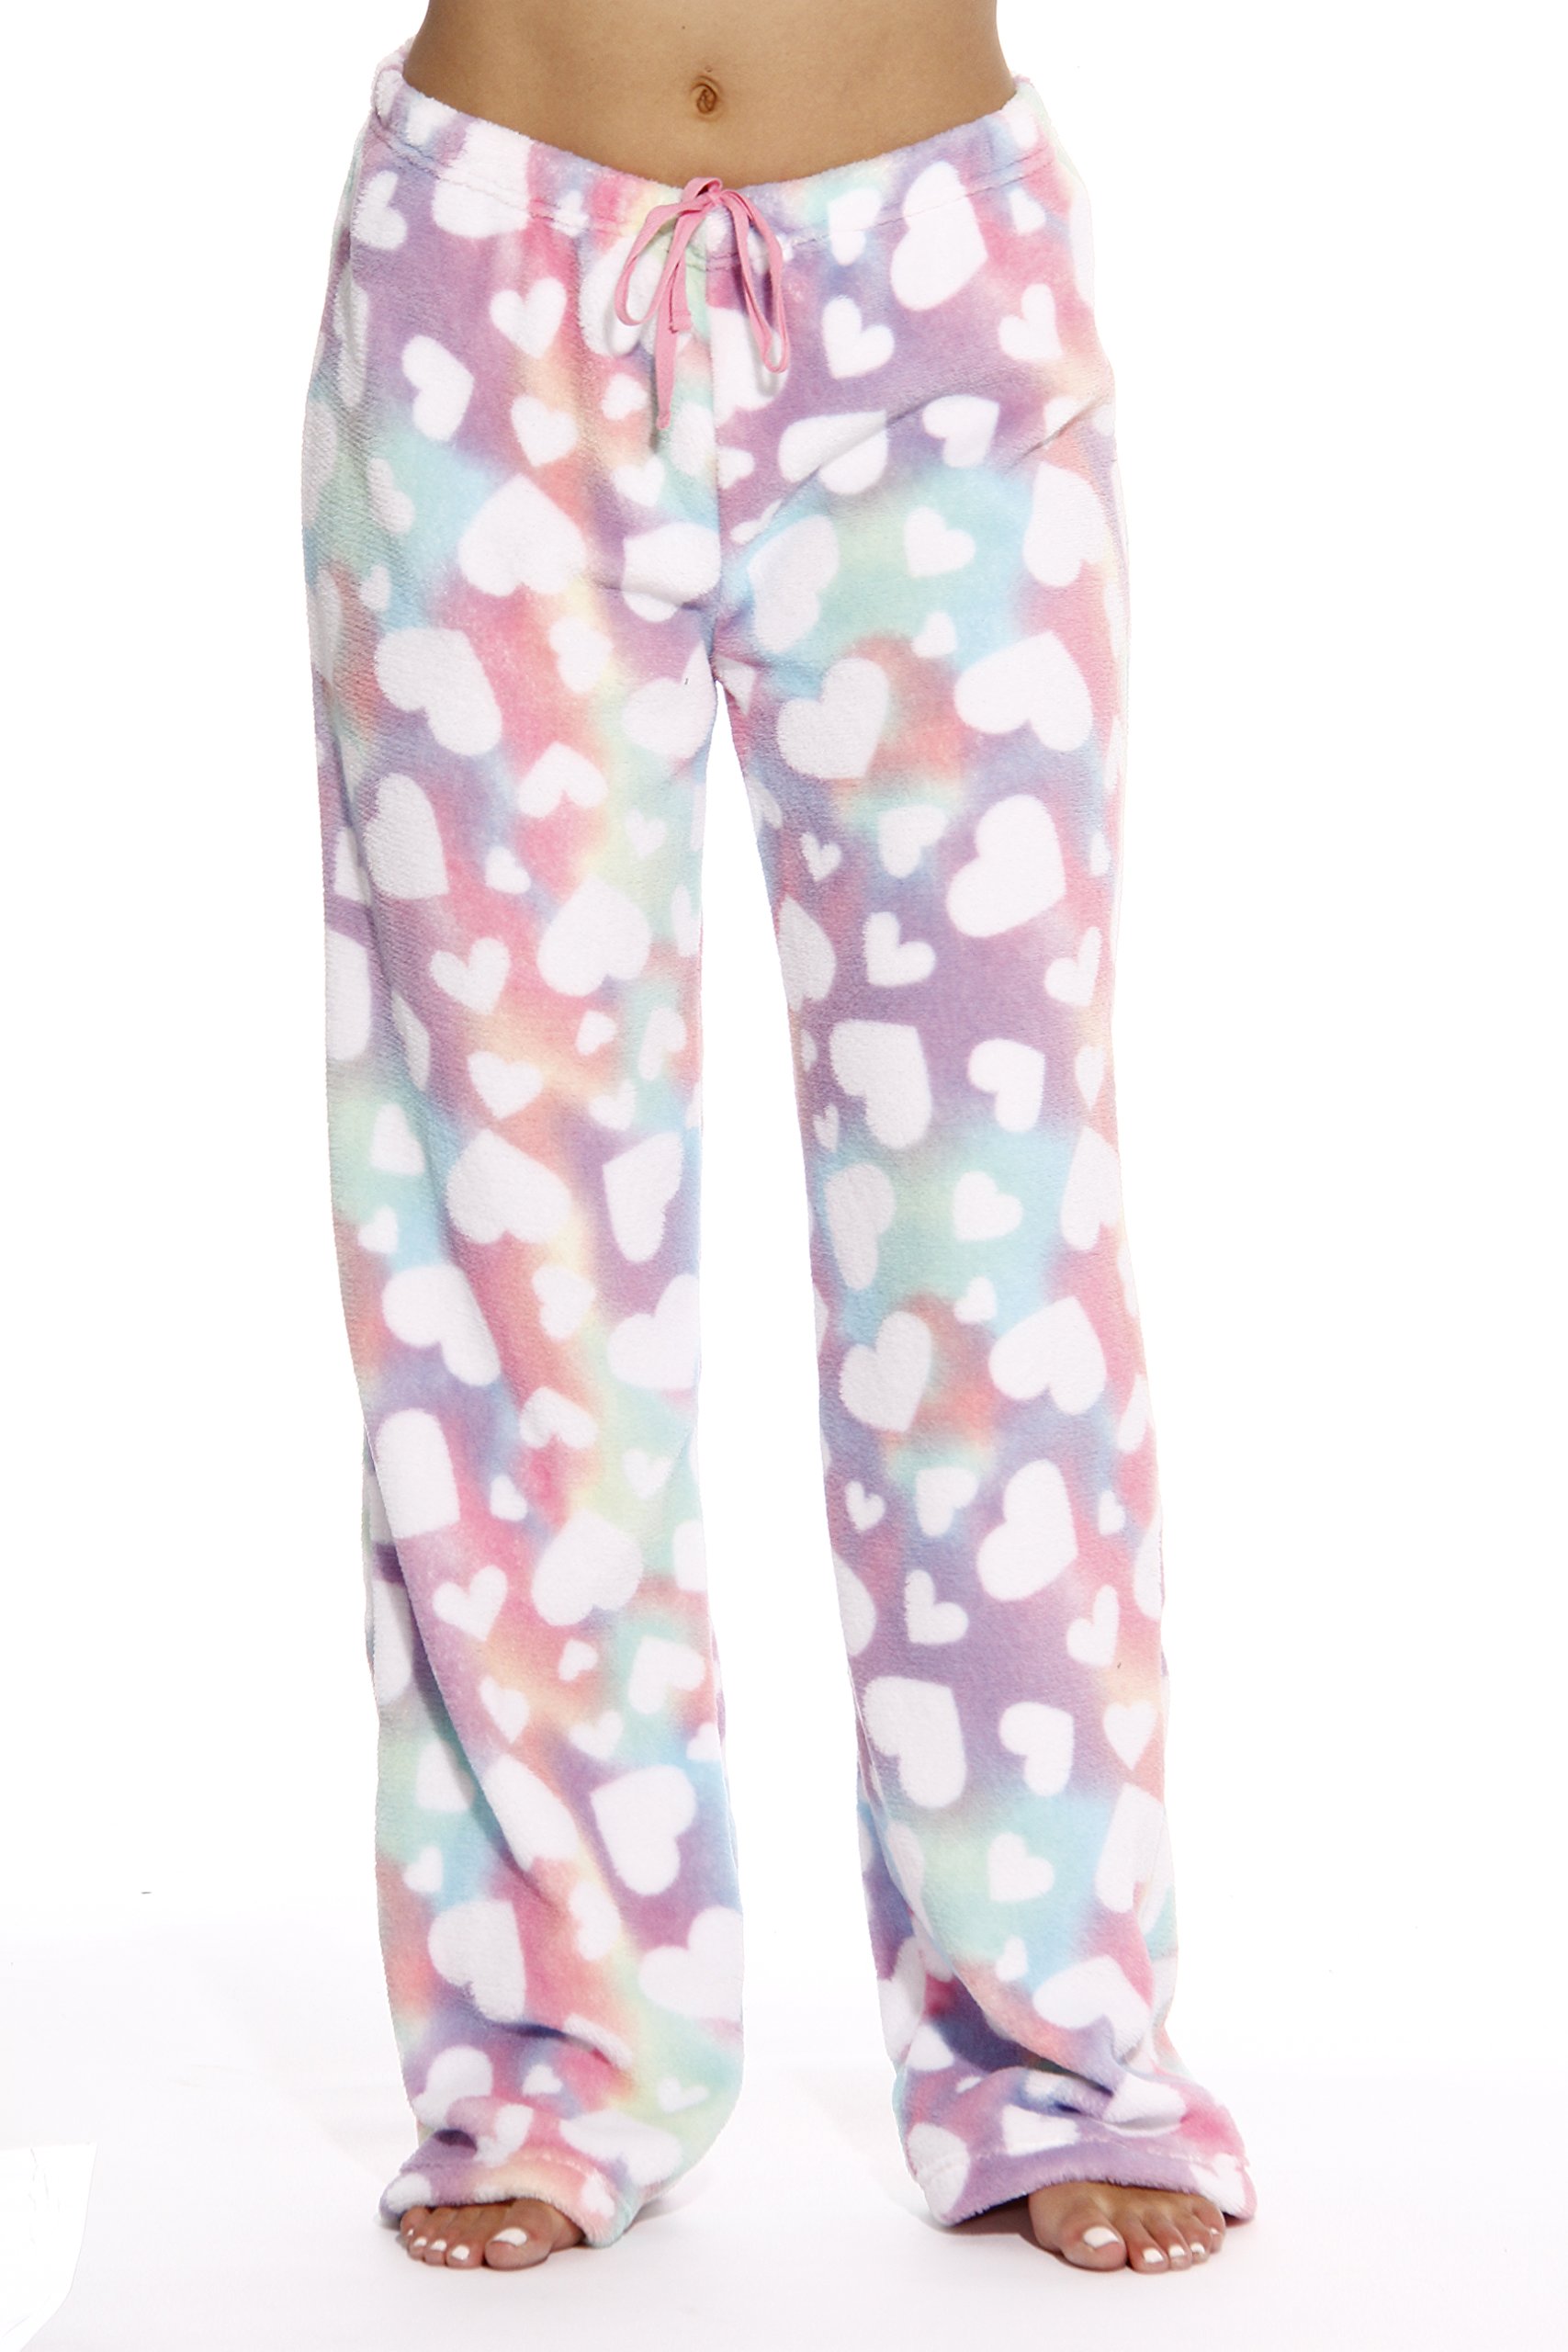 Just Love Plush Pajama Pants for Girls 45501-REDBLK-6X